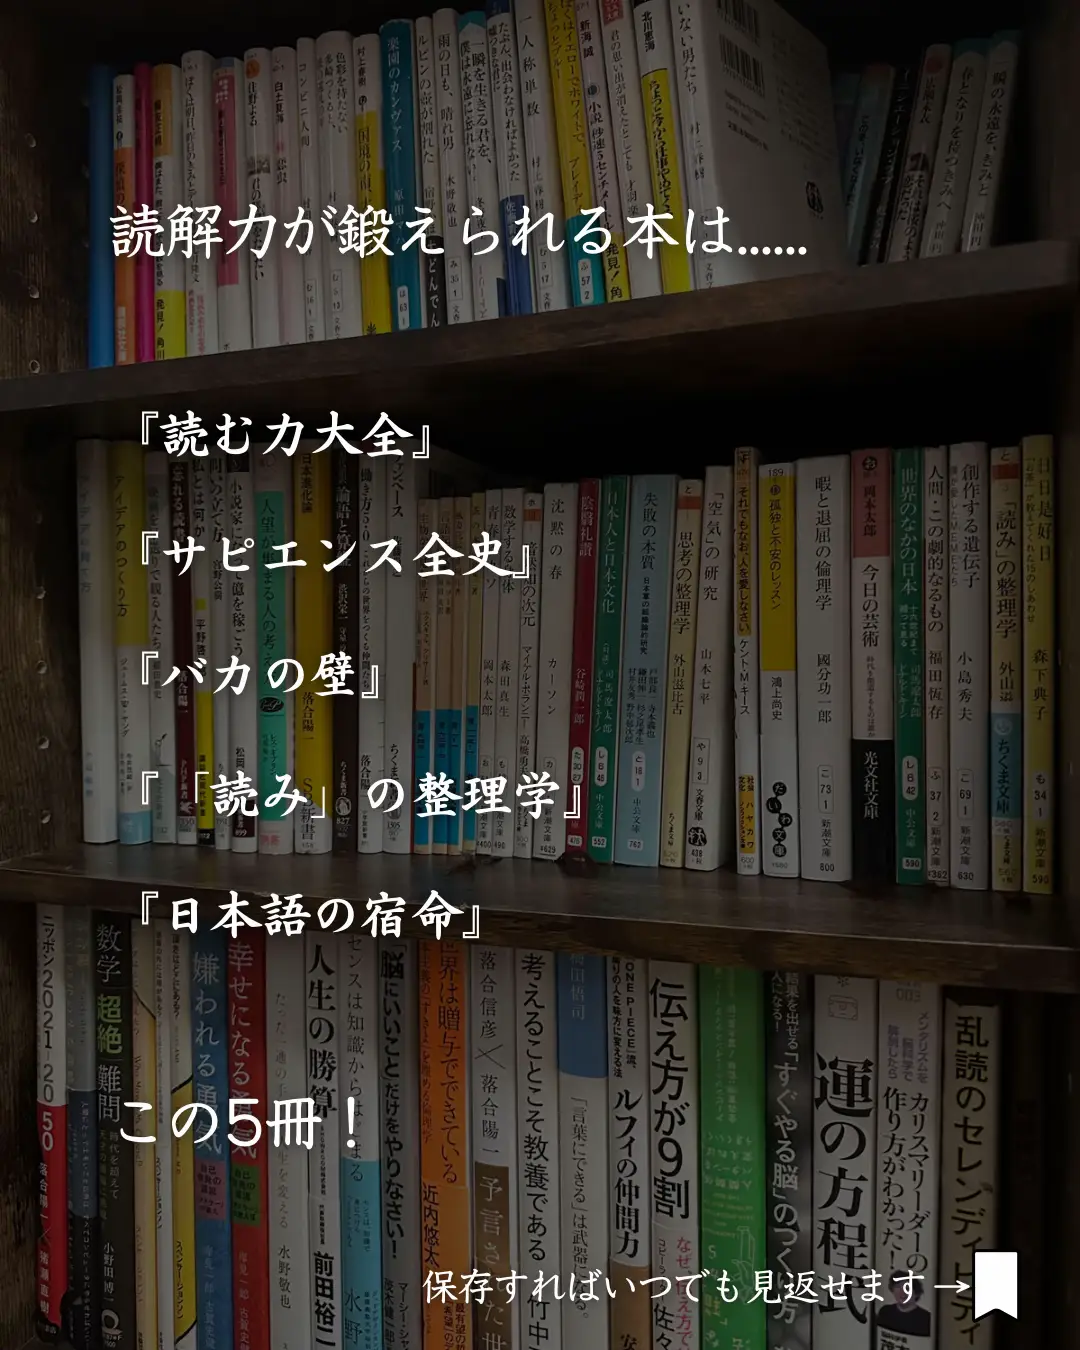 Reading Nonfiction Books - Lemon8検索